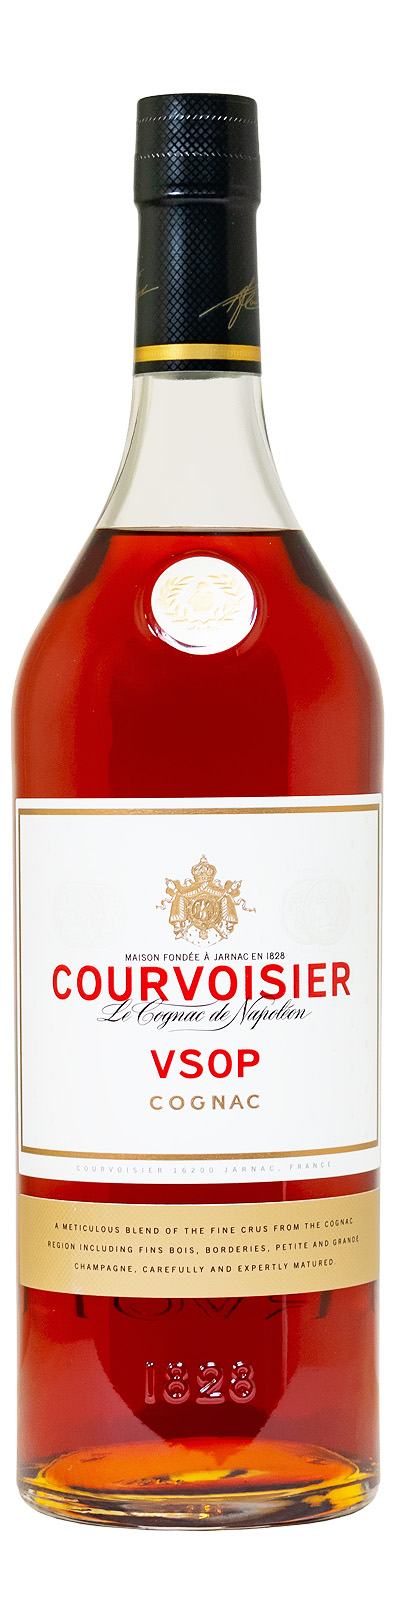 Courvoisier VSOP Cognac  - 1 Liter 40% vol